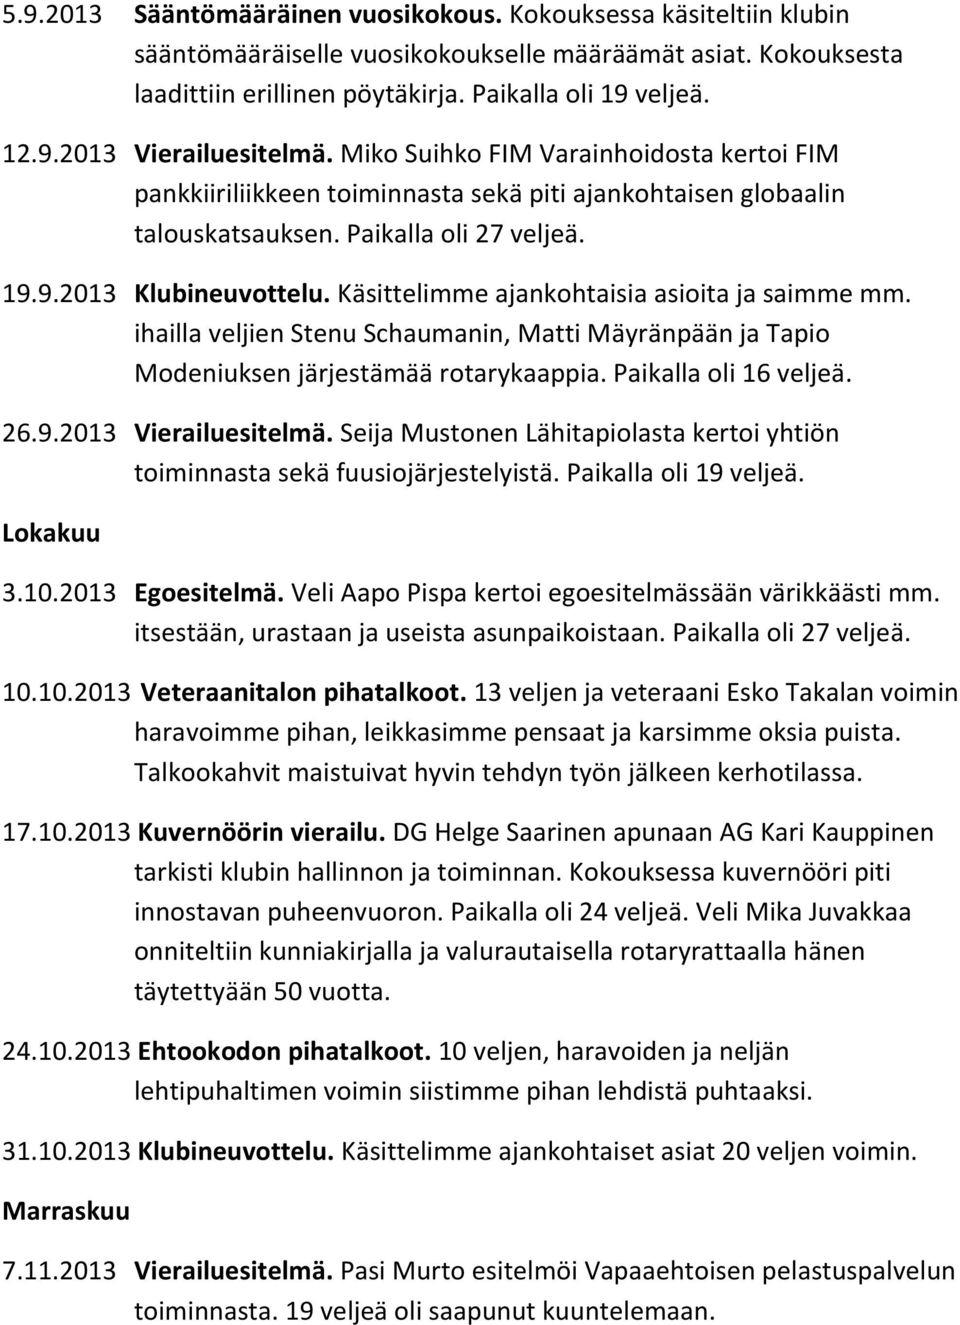 Käsittelimme ajankohtaisia asioita ja saimme mm. ihailla veljien Stenu Schaumanin, Matti Mäyränpään ja Tapio Modeniuksen järjestämää rotarykaappia. Paikalla oli 16 veljeä. 26.9.2013 Vierailuesitelmä.